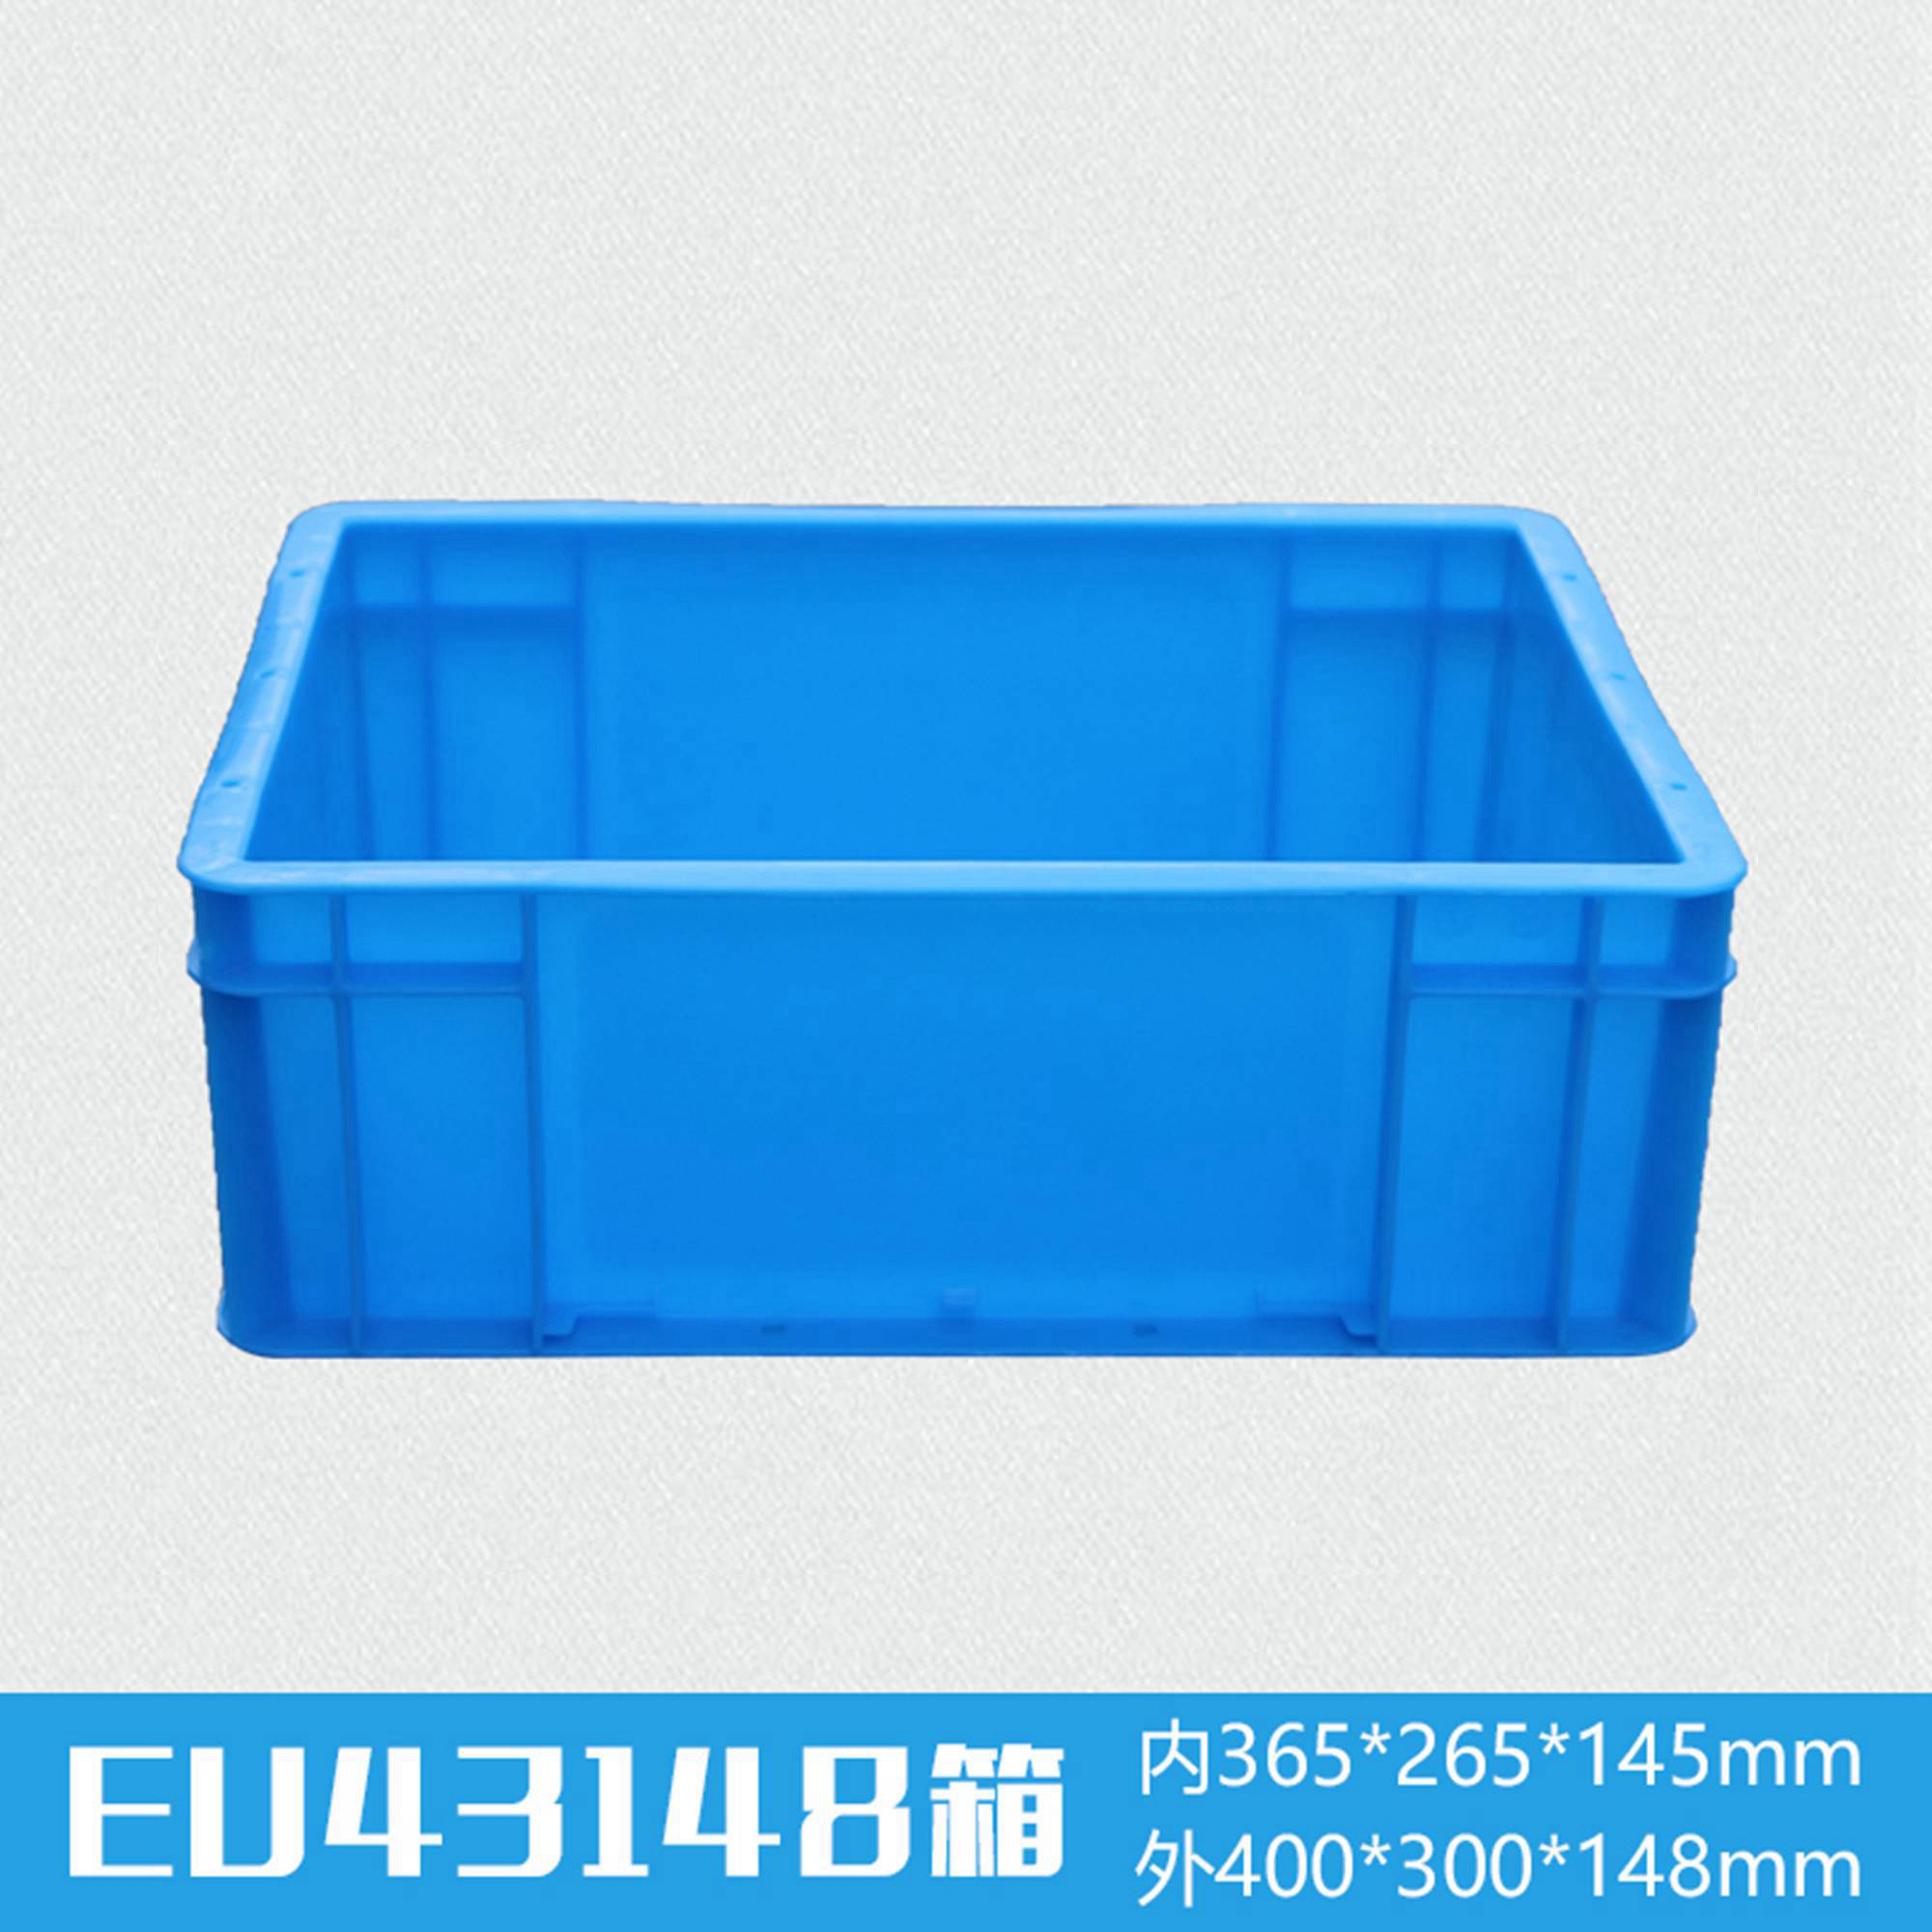 EU43148塑料物流箱